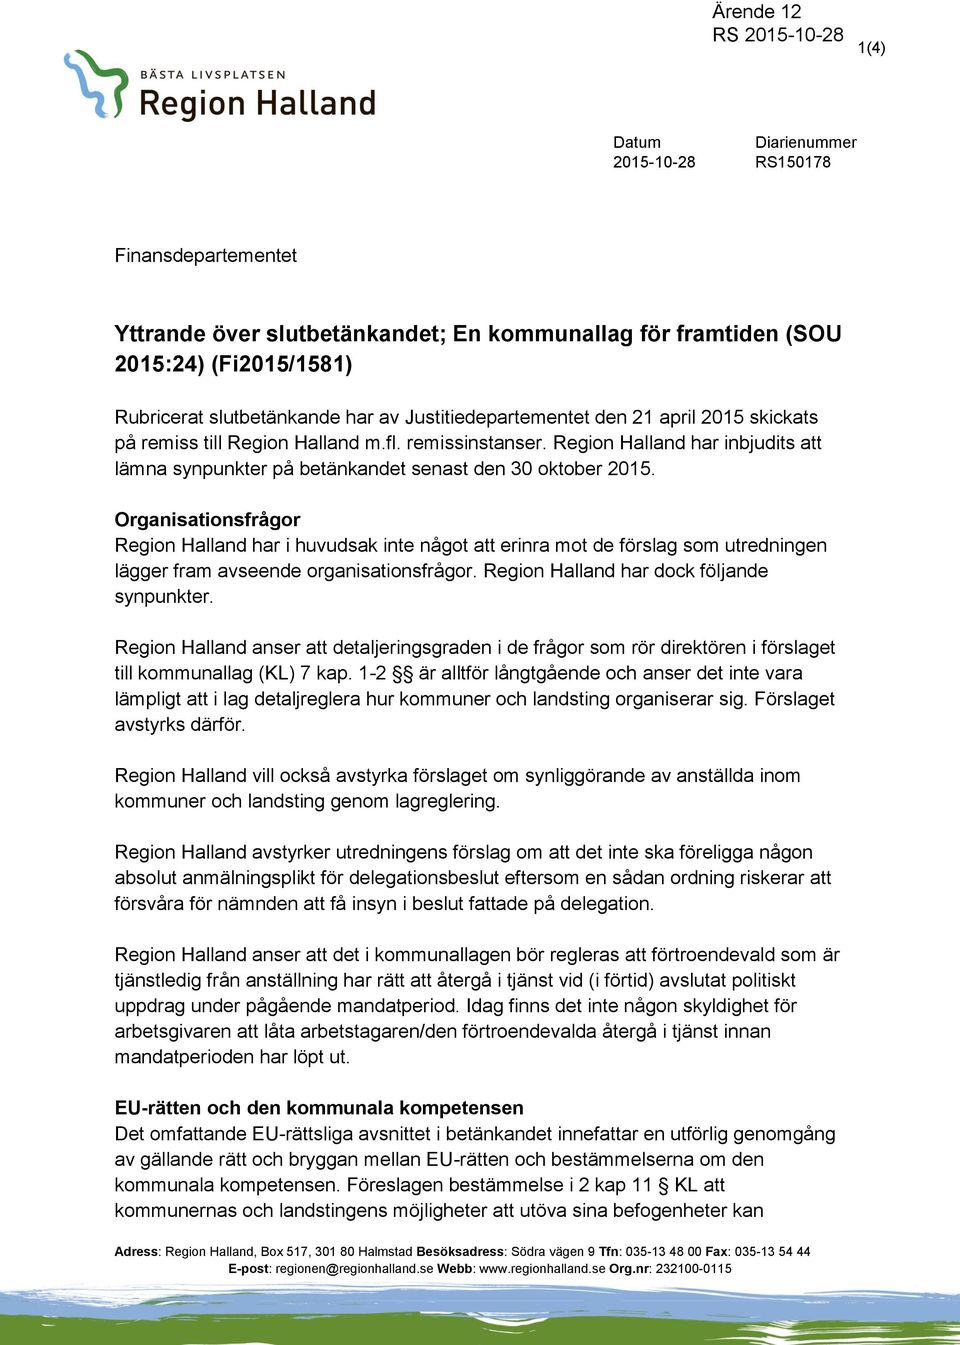 Organisationsfrågor Region Halland har i huvudsak inte något att erinra mot de förslag som utredningen lägger fram avseende organisationsfrågor. Region Halland har dock följande synpunkter.